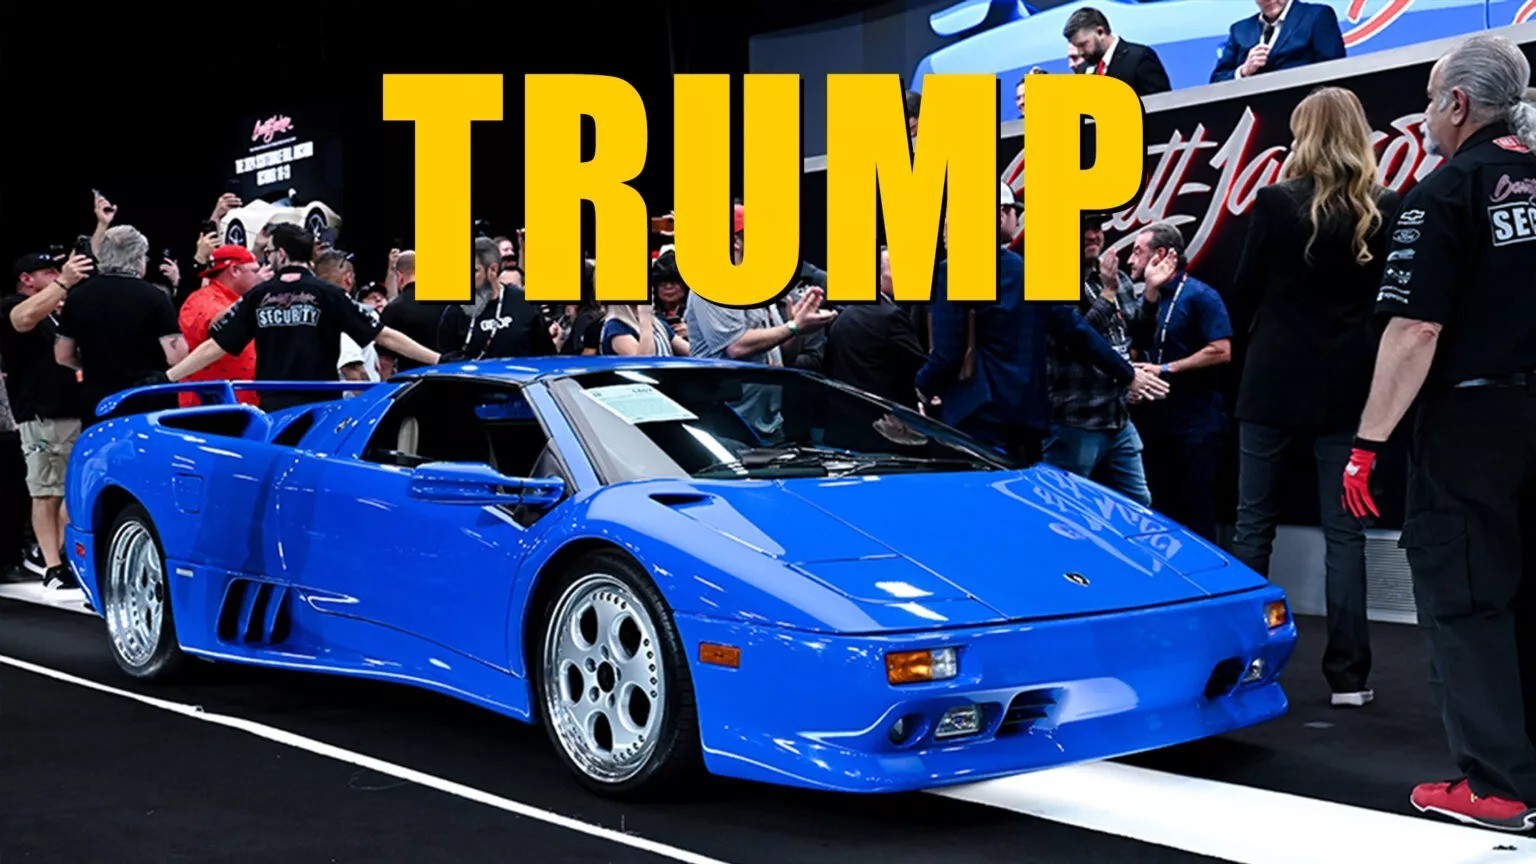 Siêu xe Lamborghini Diablo đời 1997 của Donald Trump lập kỉ lục về giá bán